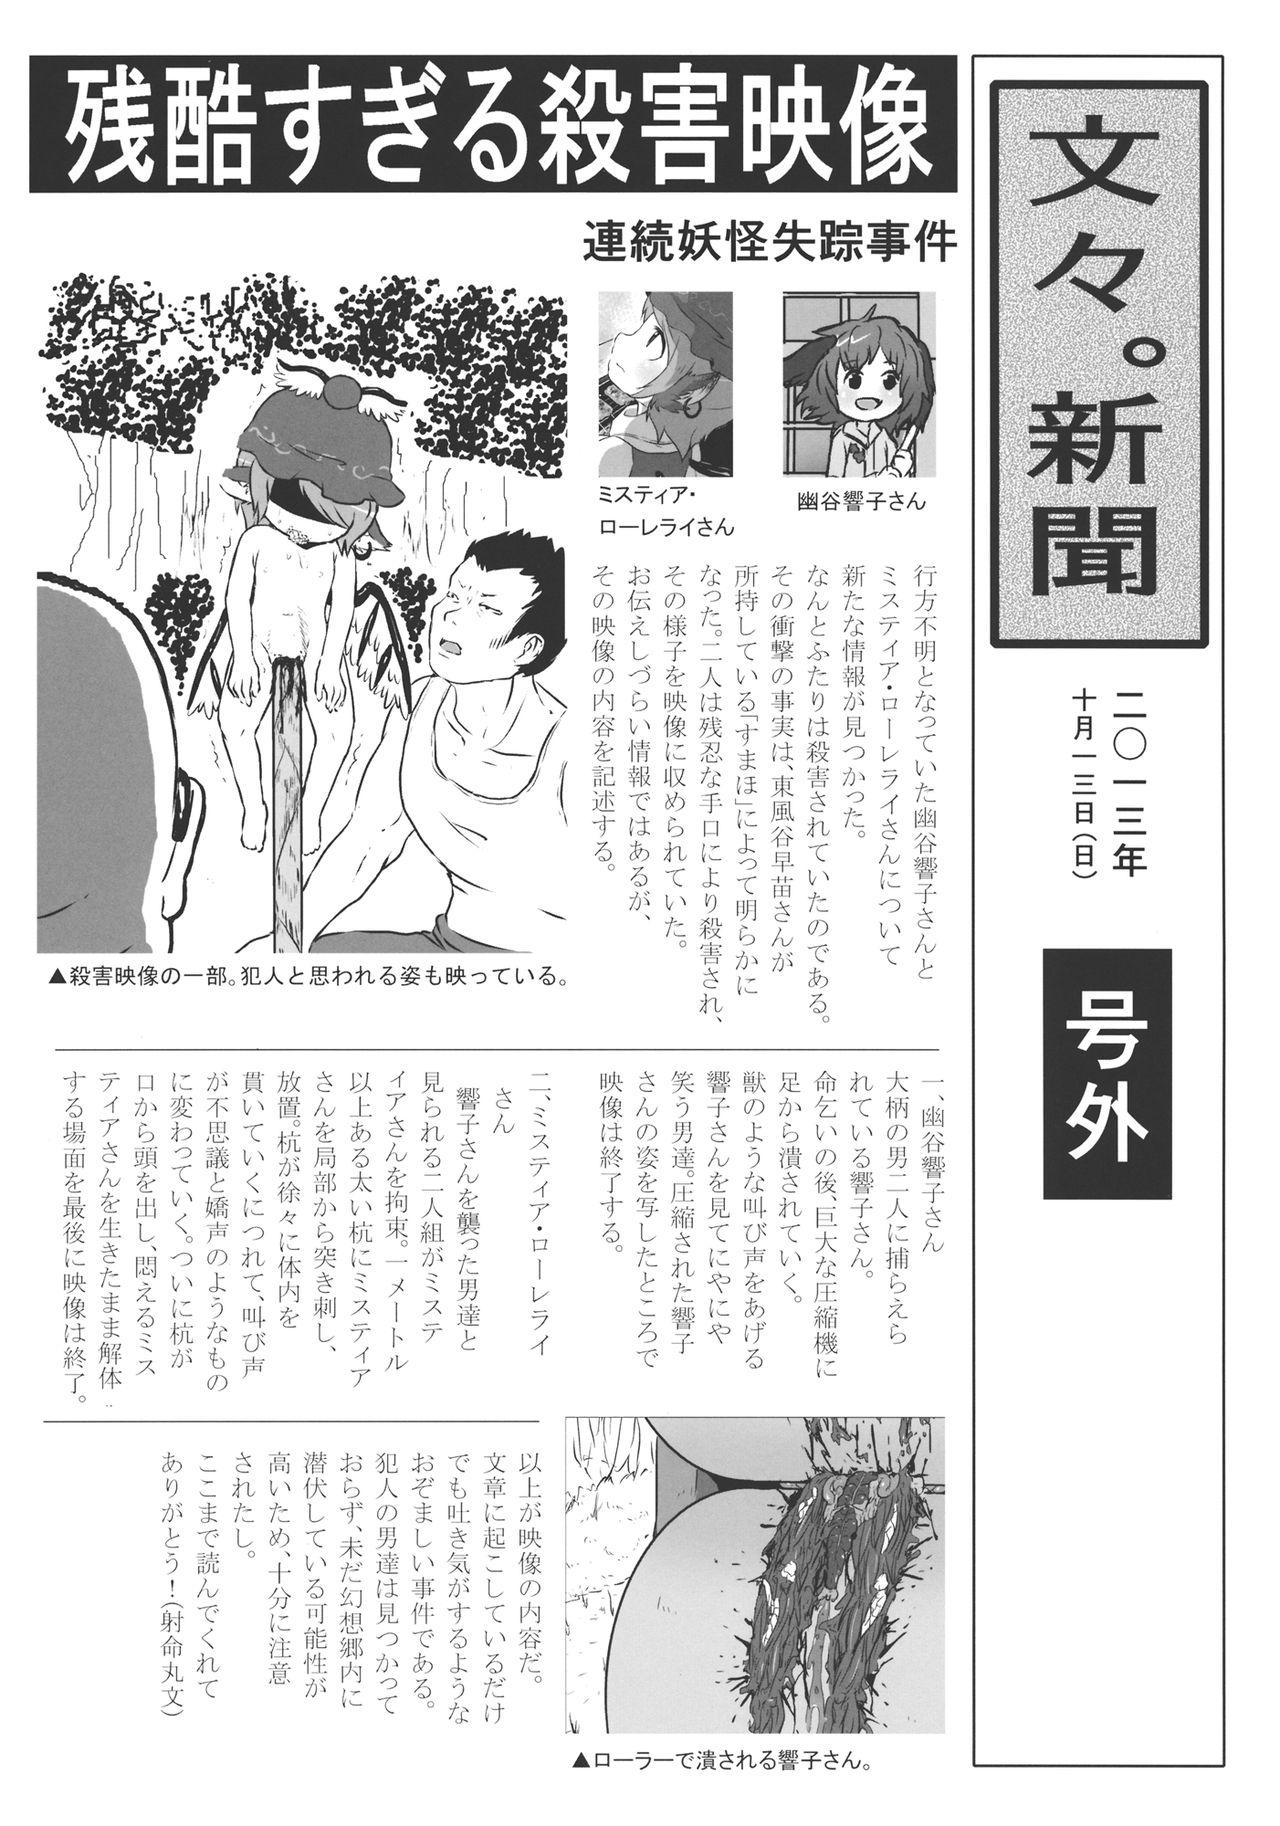 Red (Kouroumu 9) [02 (Harasaki)] (Kojin Satsuei)(Touhou)(Kouroumu 9)[02] Touhou snuff vol.3 Kawashiro Nitori (Mushuusei) (Loli-kei Youjo no Kirei na Hadaka wo Suki Houdai shichai mashita!).avi (Touhou Project) [布洛基个人汉化] - Touhou project Pov Sex - Page 4